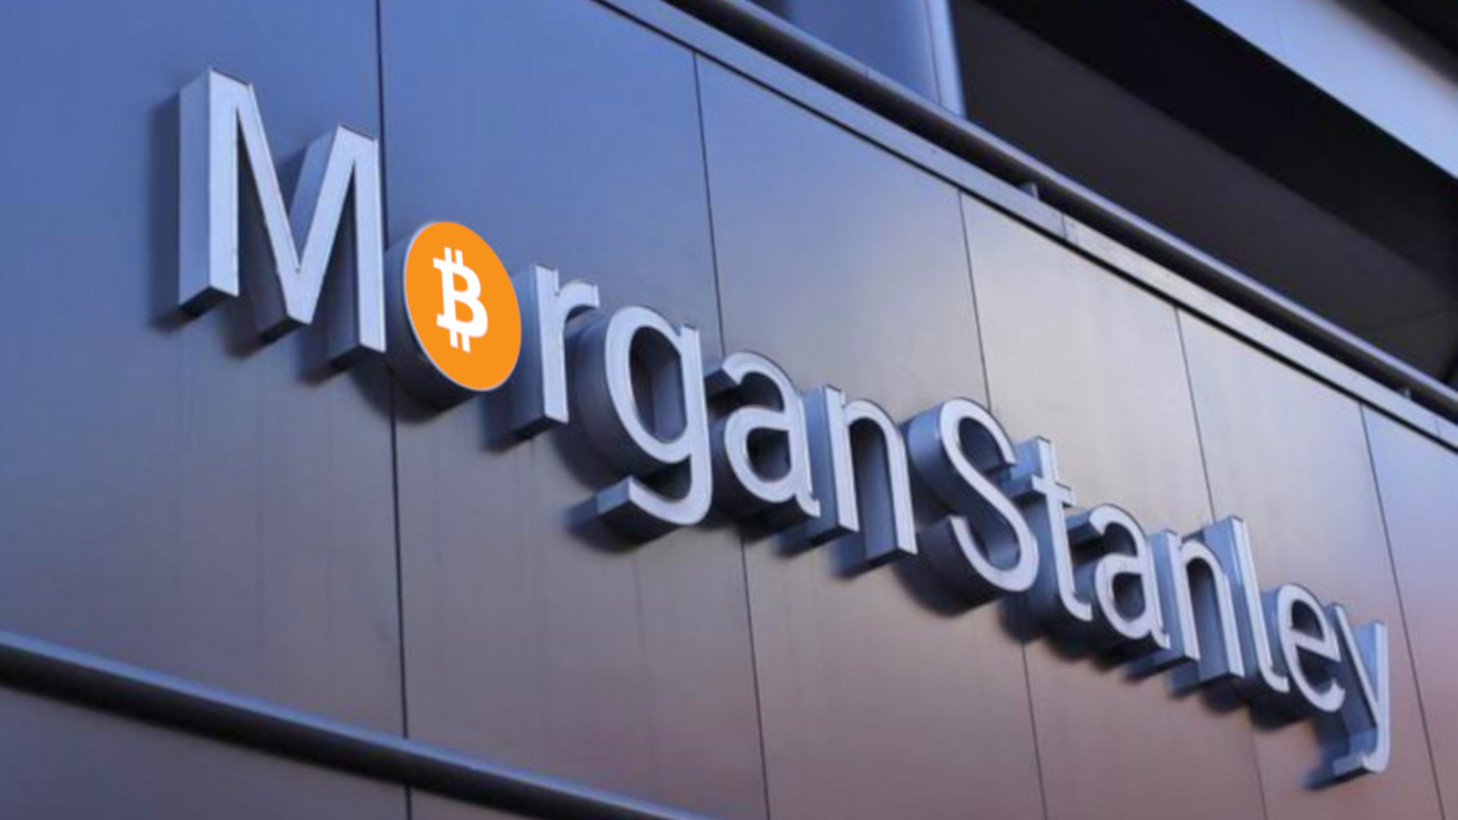 Morgan stanley bitcoin btc cryptocurrencies futures